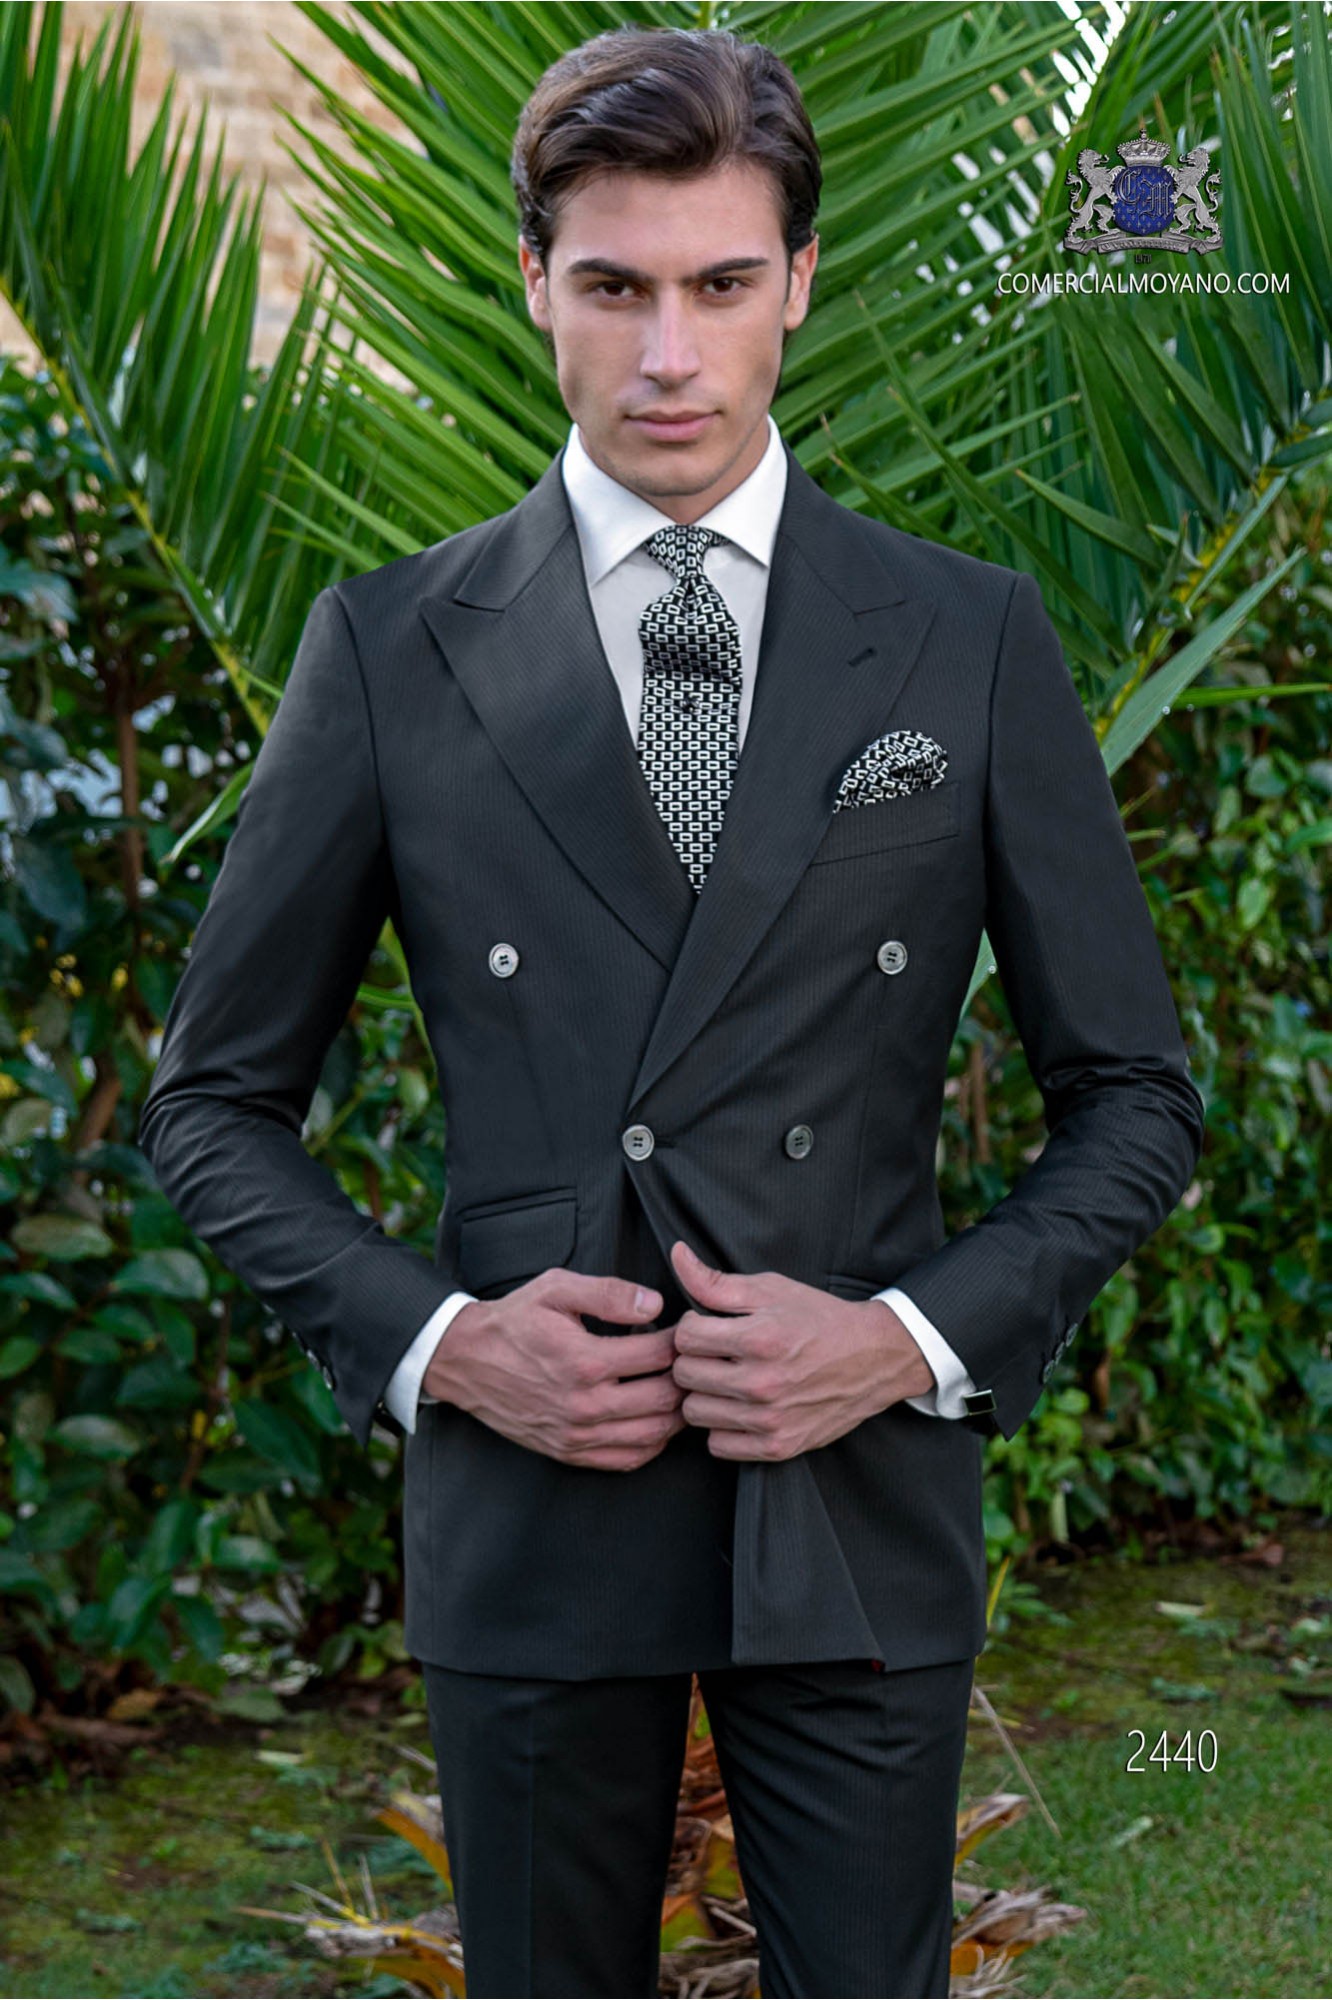 Traje cruzado negro diplomático raya negra modelo: 2440 Mario Moyano colección Gentleman